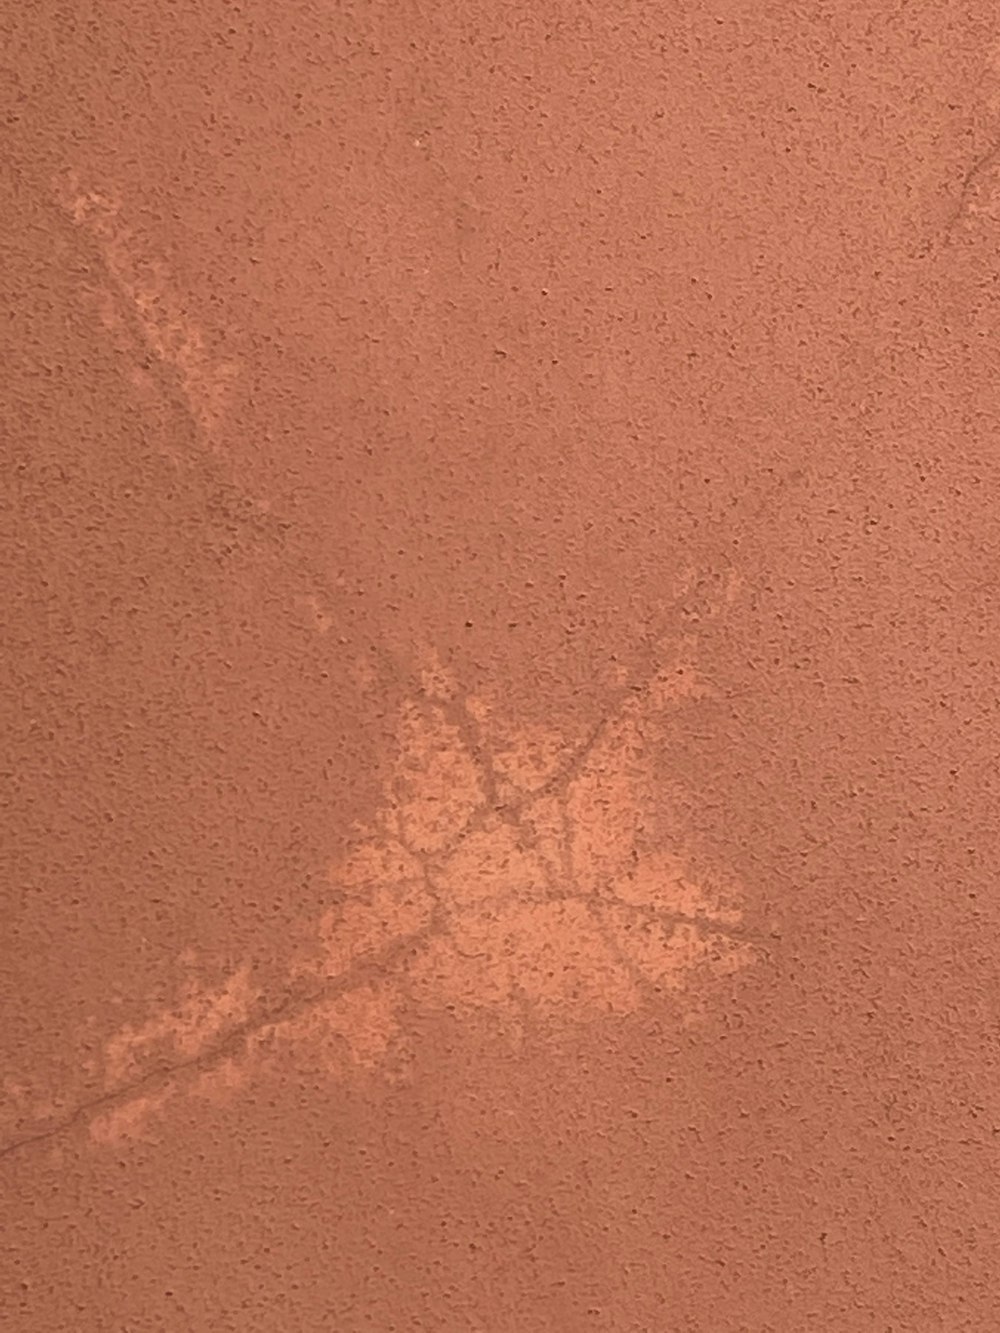 Un'immagine delle impronte di una persona nella sabbia